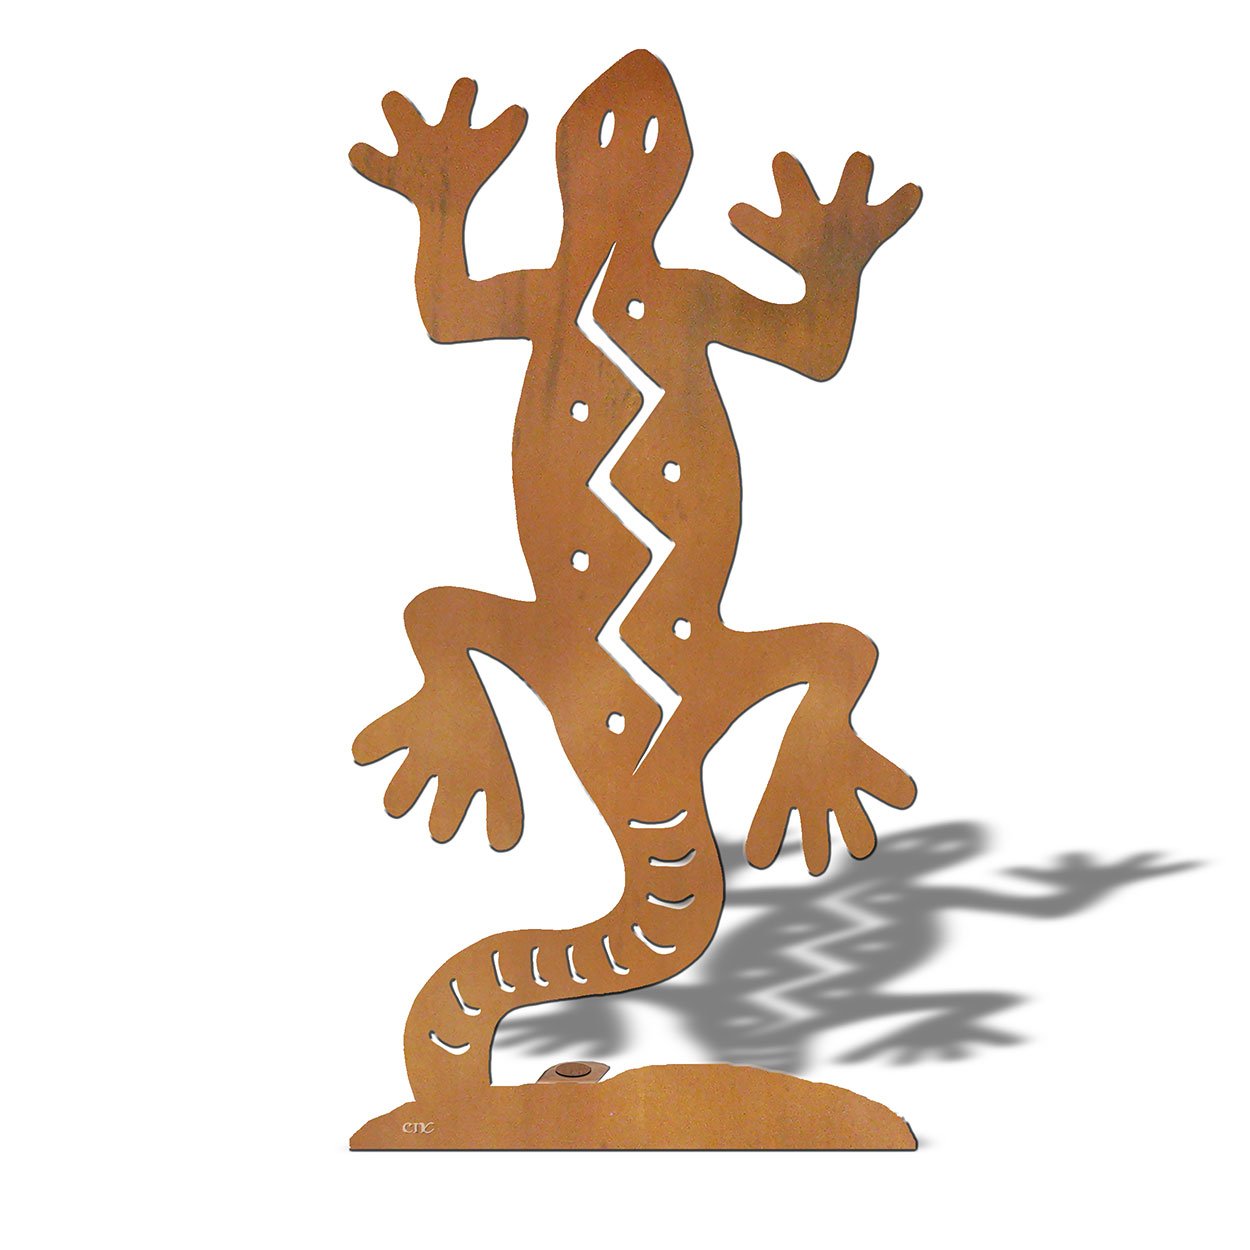 603403 - Southwest Gecko Small Rust Metal Garden Sculpture